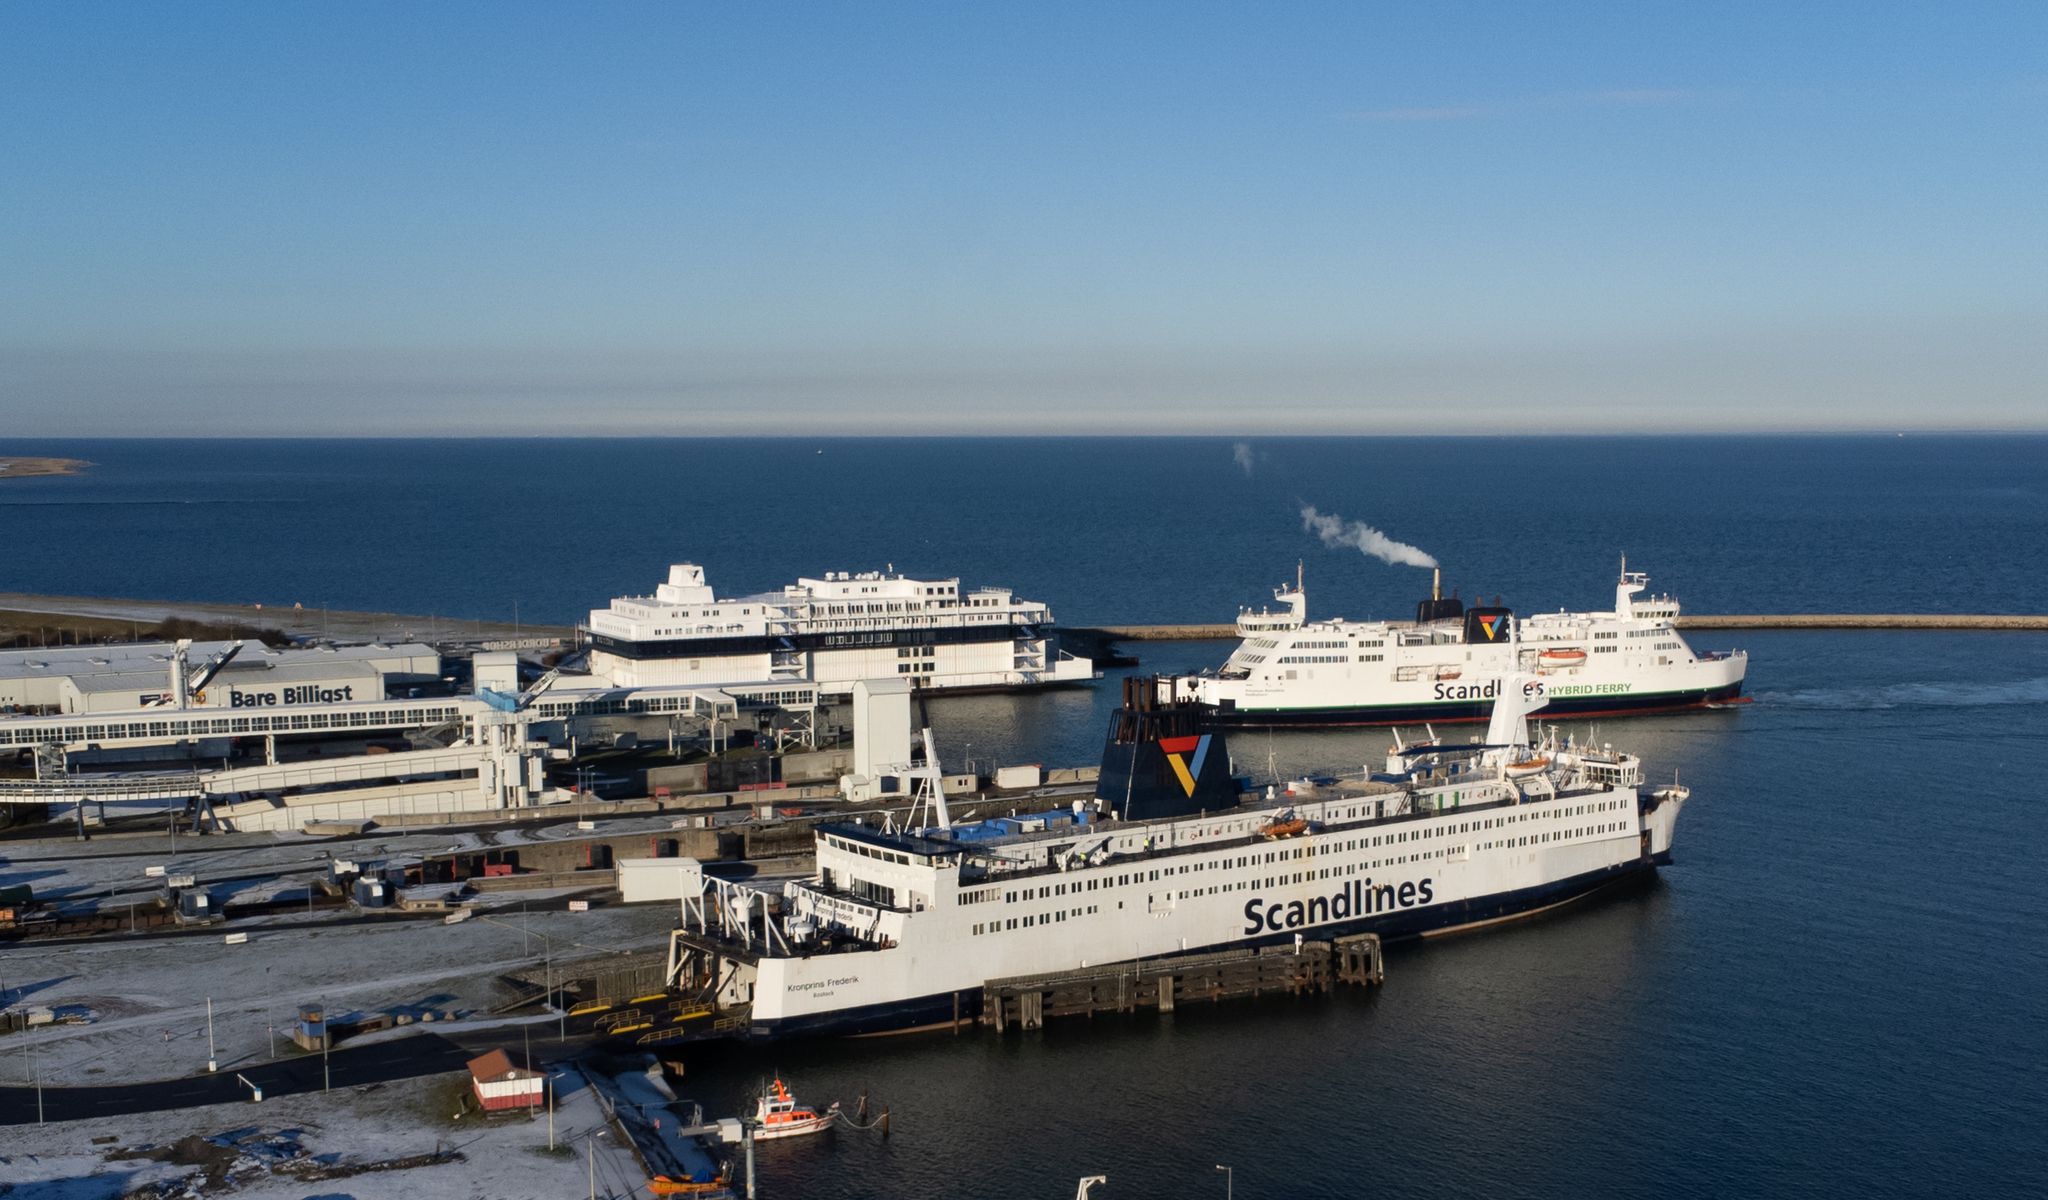 Drei Fähren der dänischen Reederei Scandlines sind im Fährhafen von Puttgarden auf der Insel Fehmarn zu sehen.